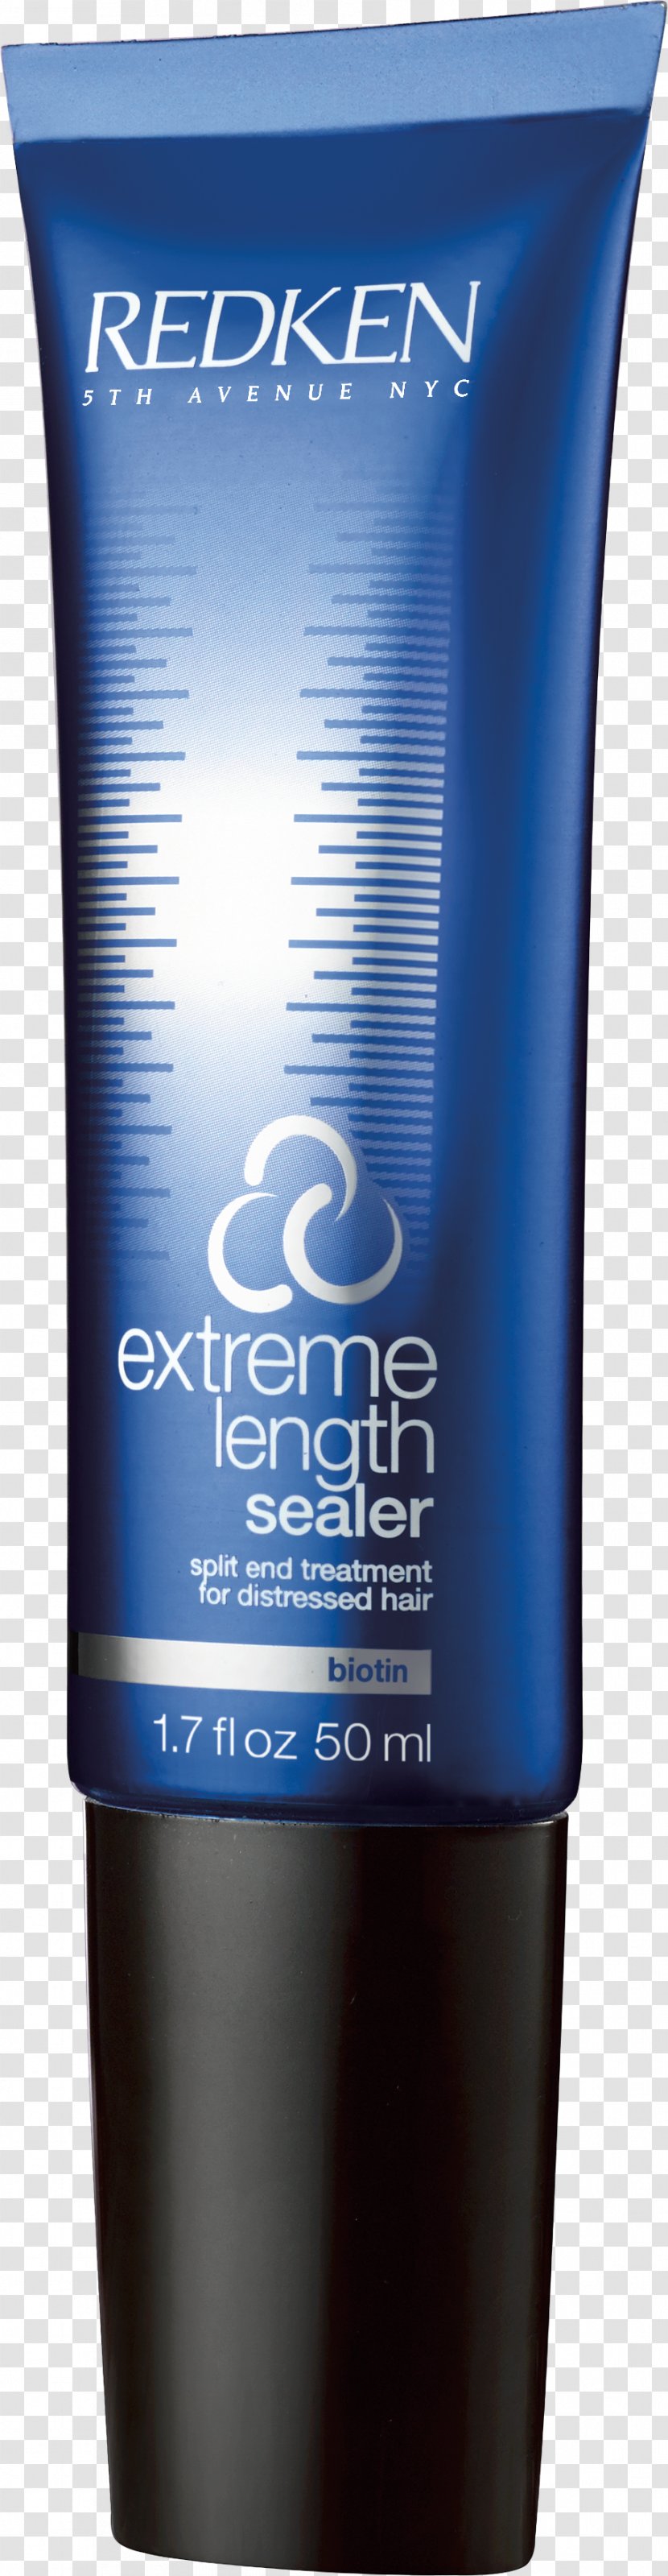 Redken Extreme Length Sealer Split End Treatment Shampoo Primer Hair Care - Skin Transparent PNG